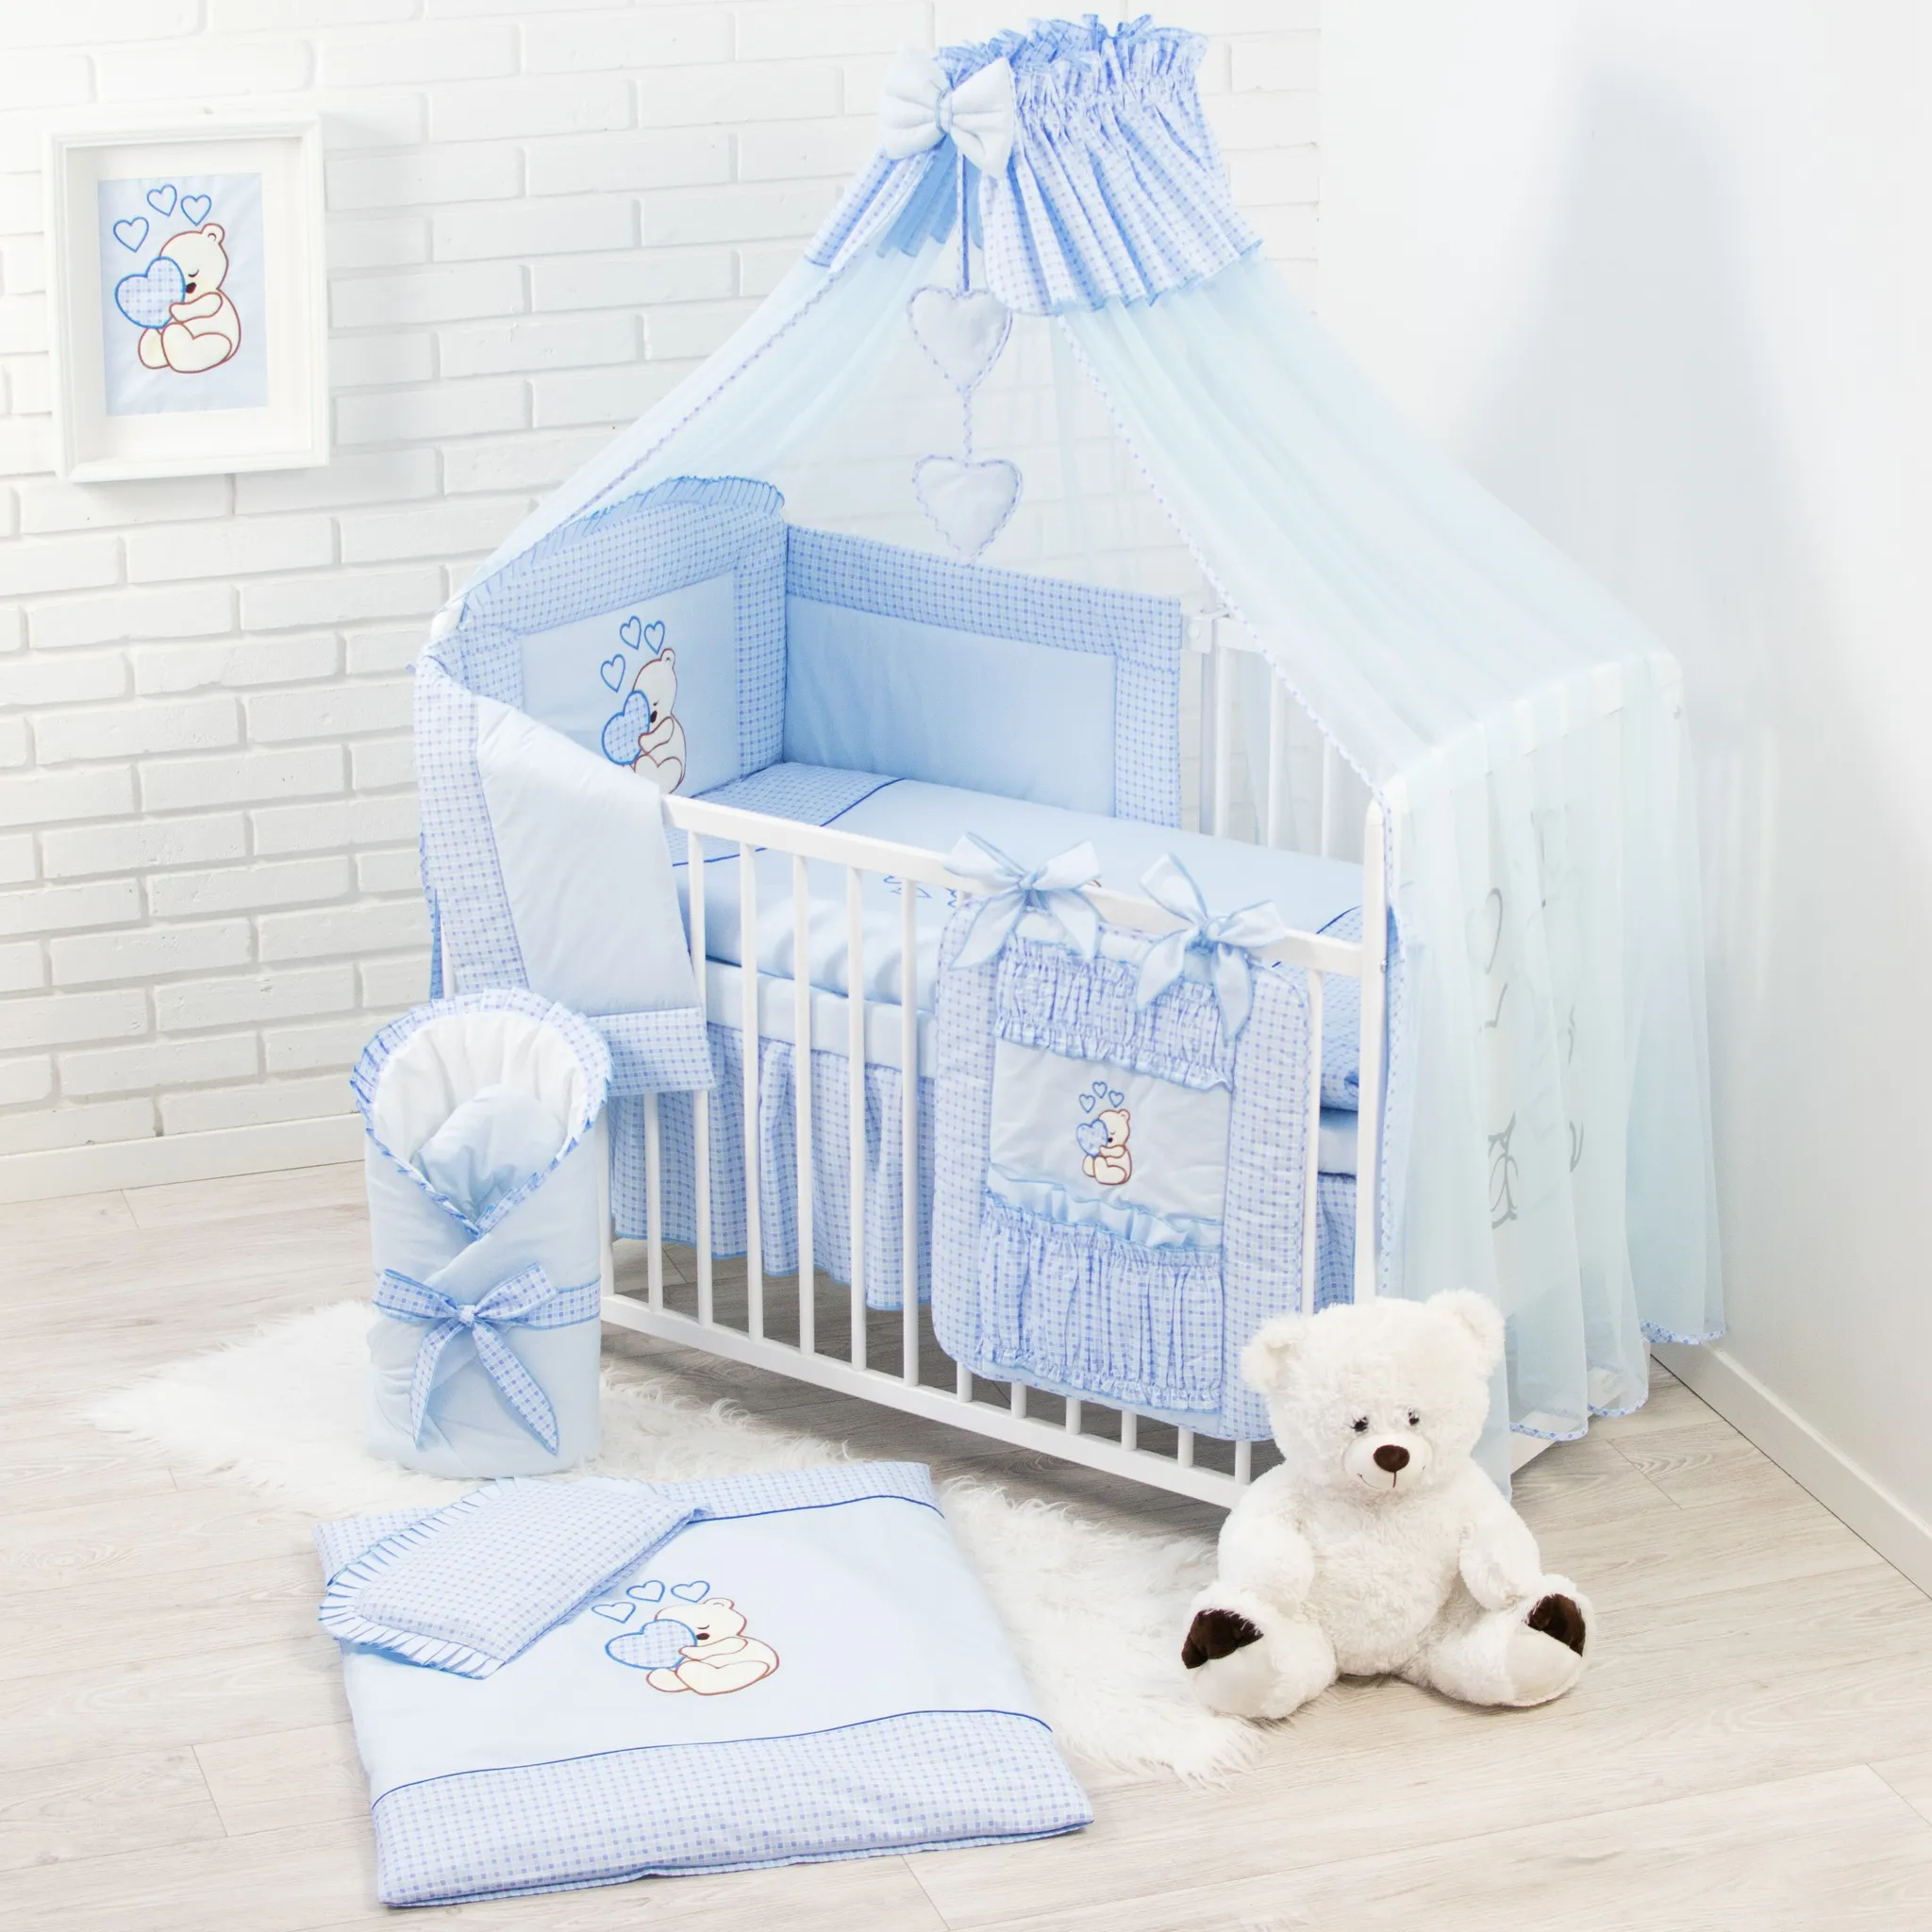 Bettwäsche mit Teddy/Bär besticktes Motiv Komplettset XL,10-teilig 100 % Baumwolle mit Stickerei für Mädchen oder Jungen Baby-Bettwaren Moskitonetz 